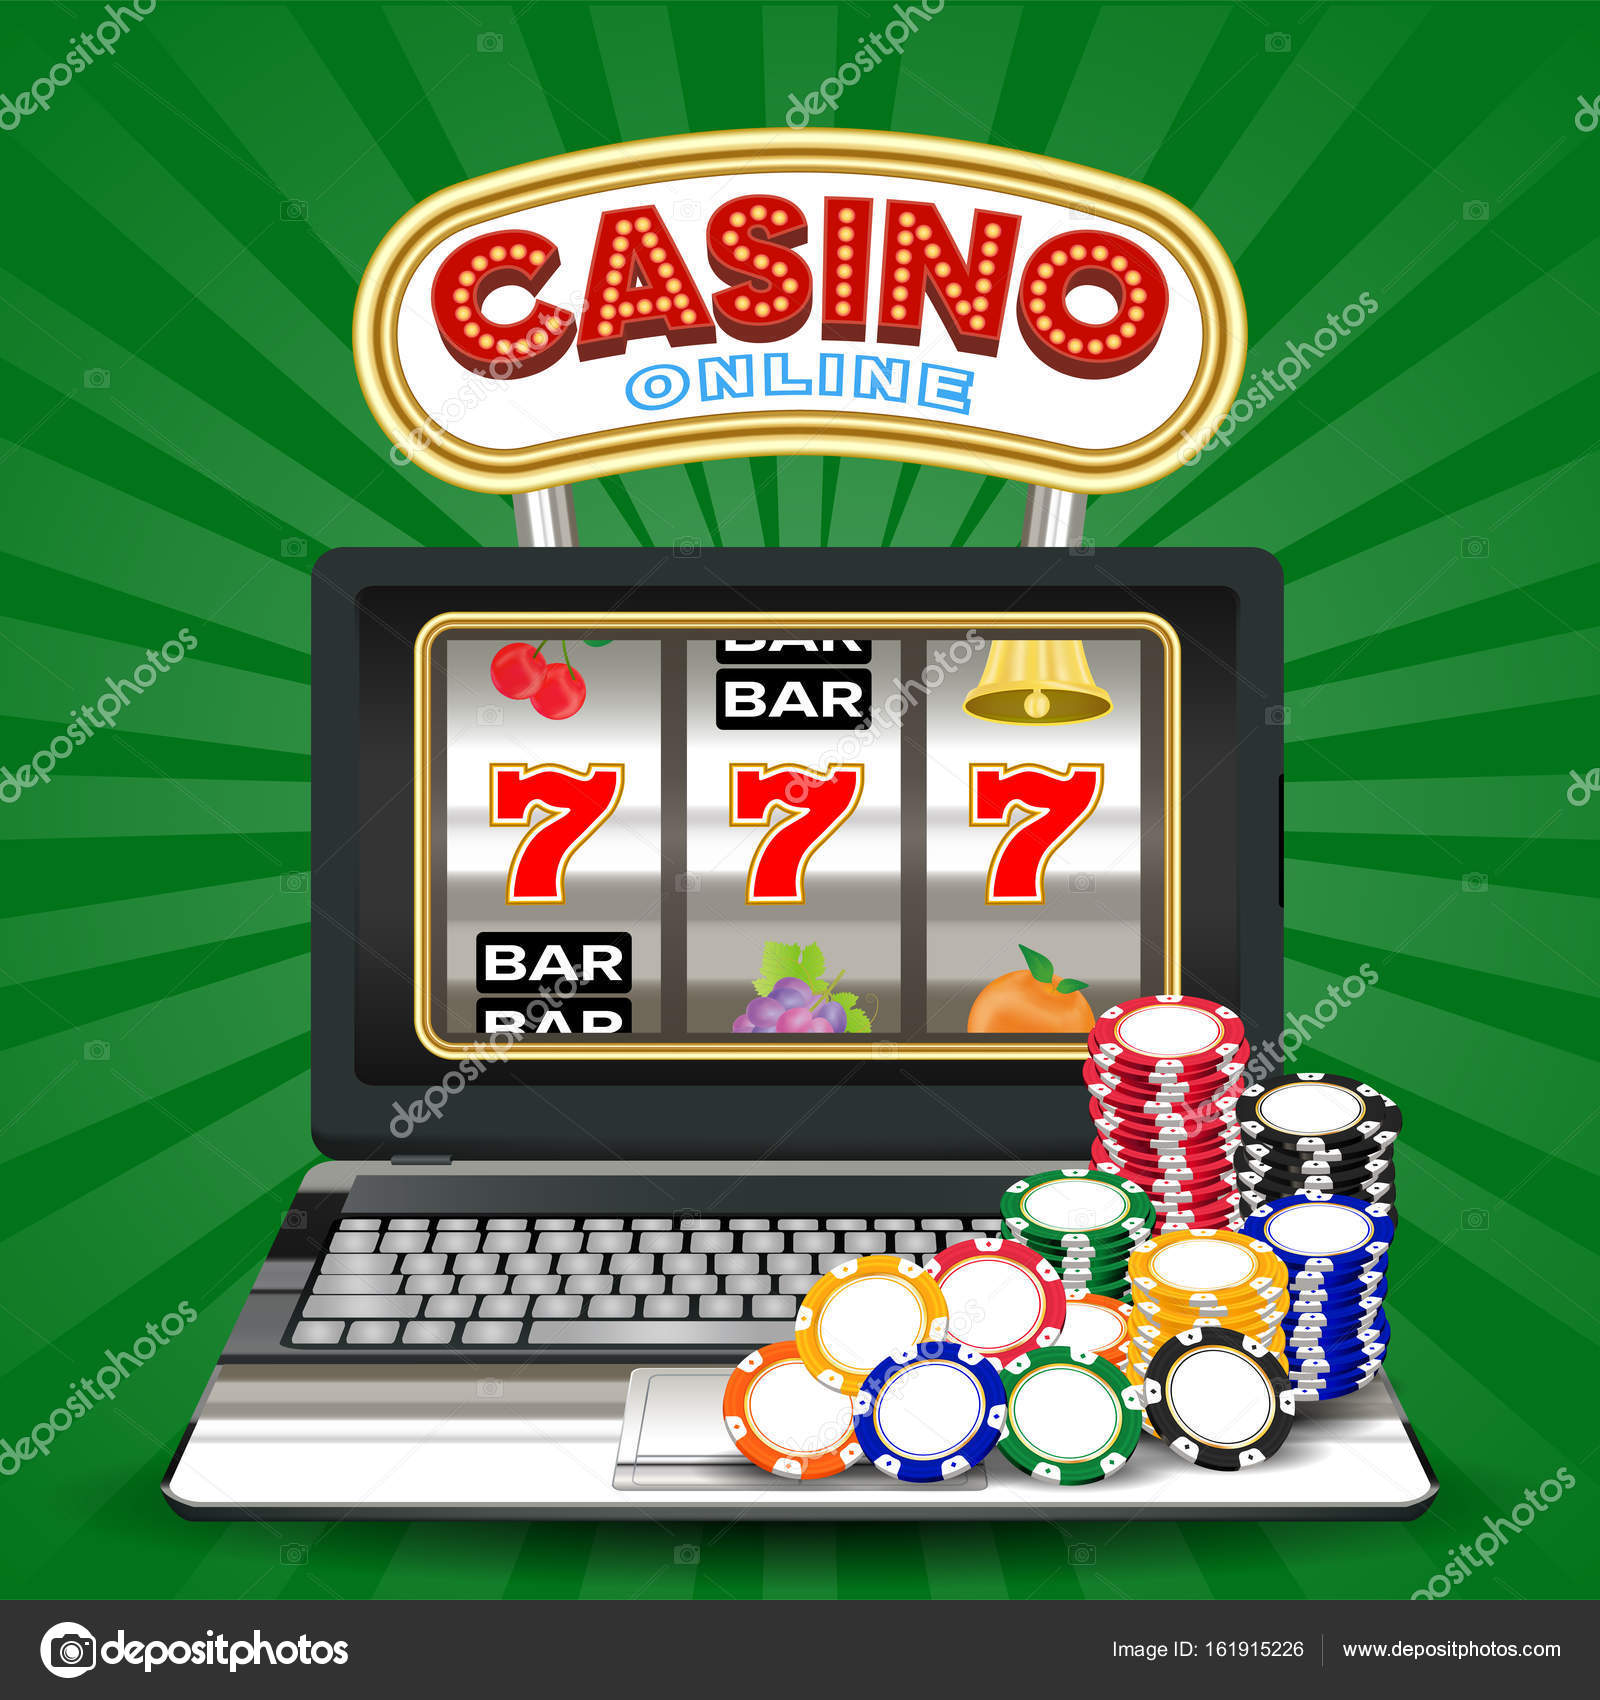 Jocuri de noroc online din Australia cu recenzii pentru bani reali